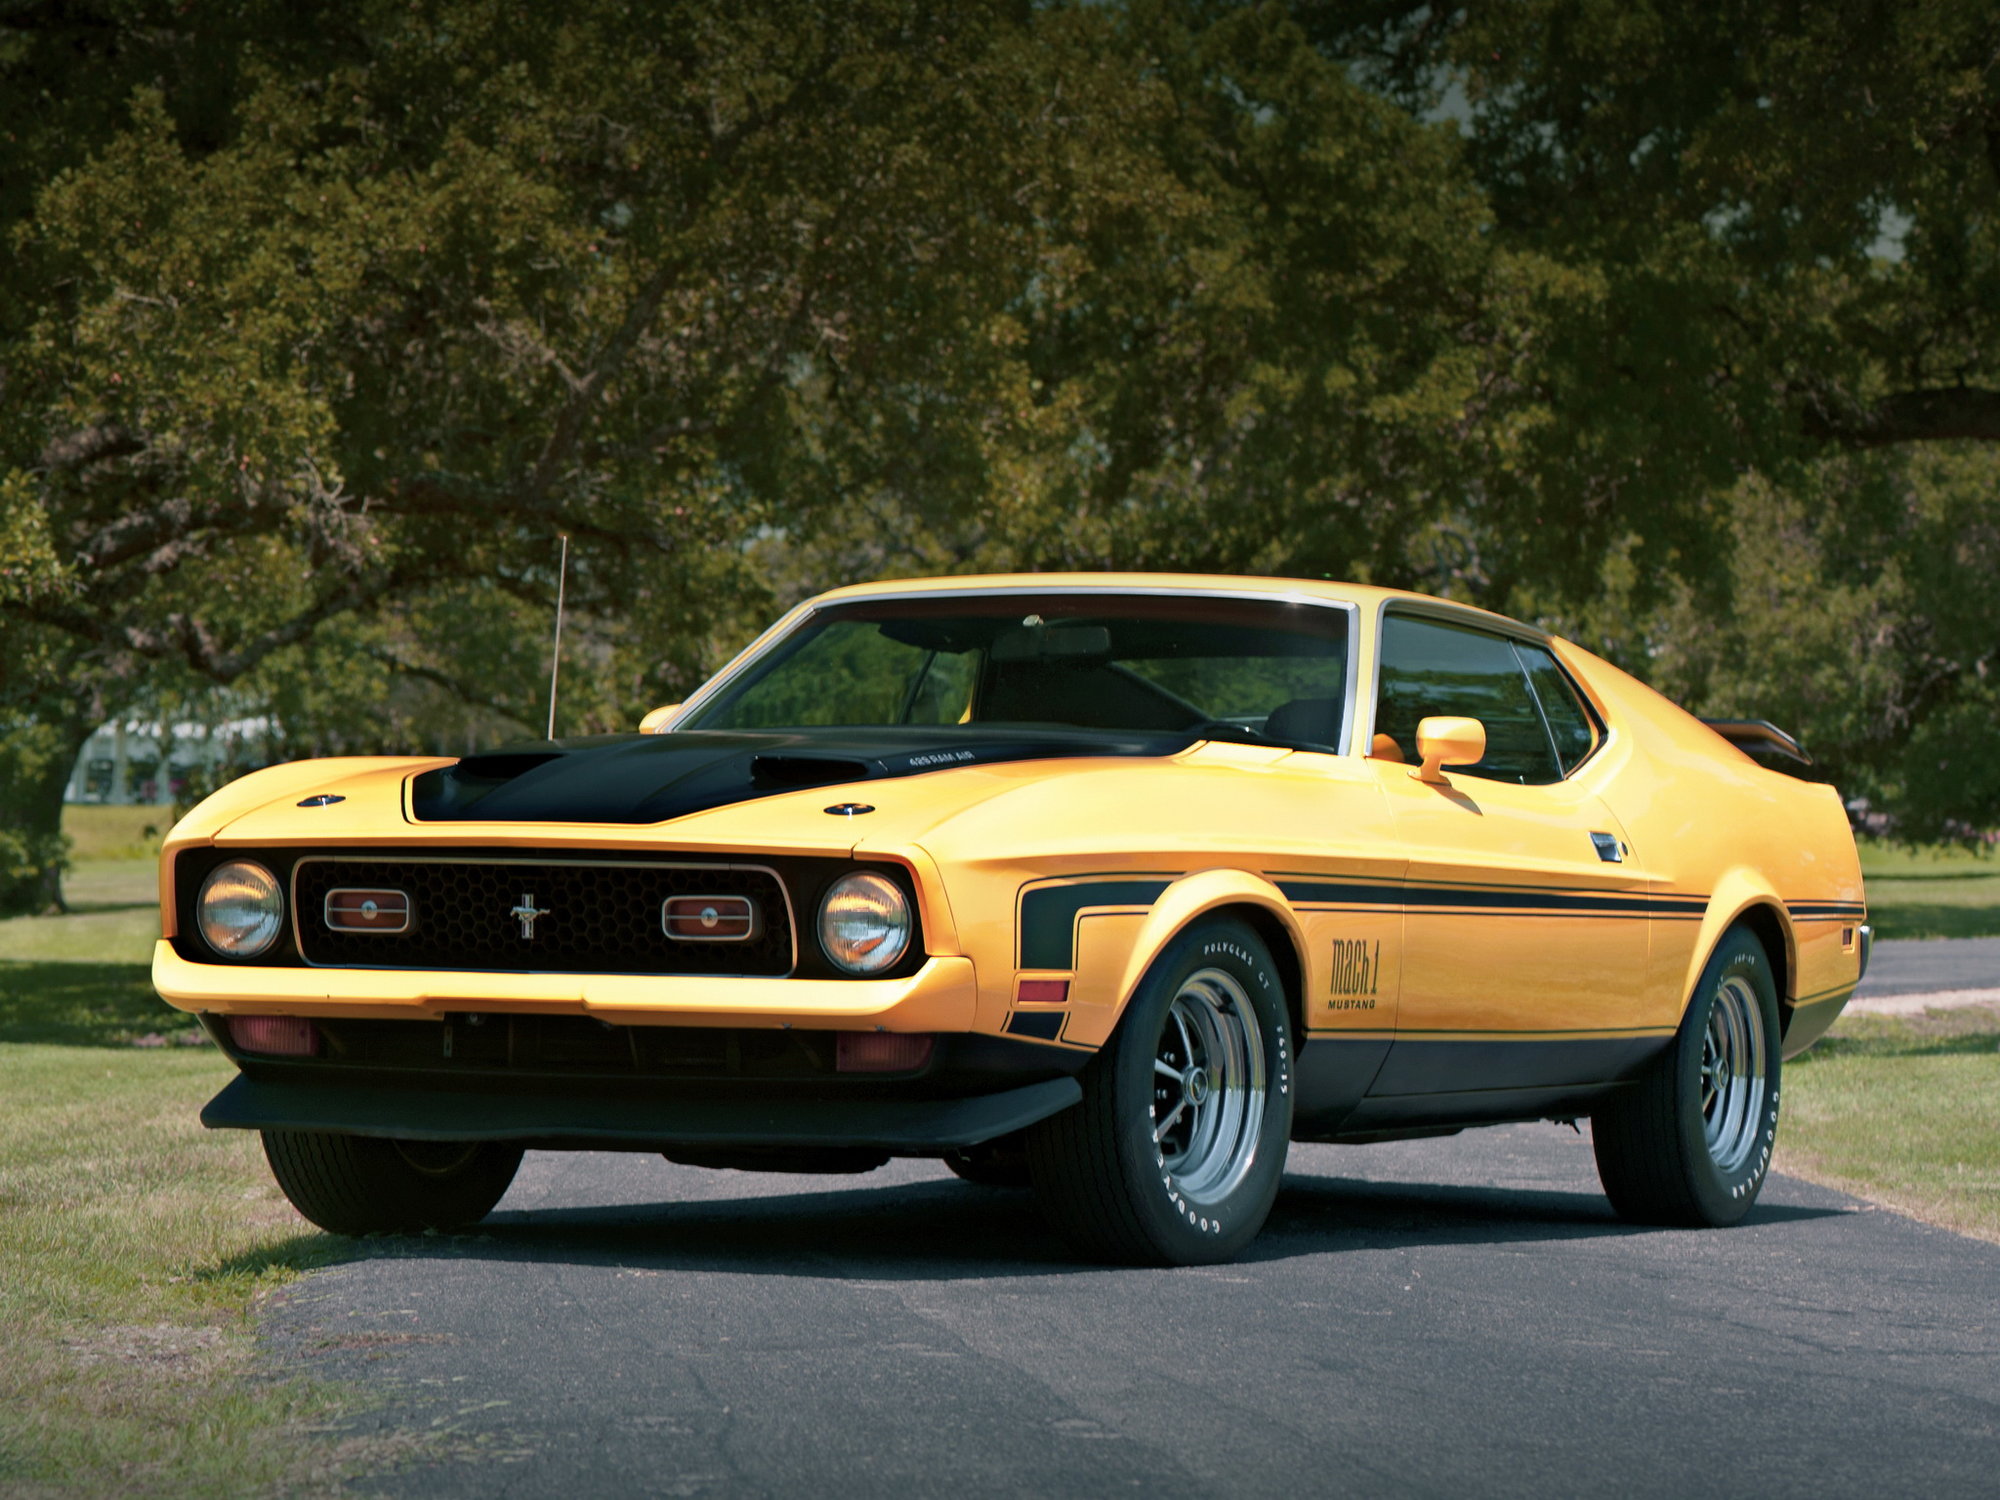 Původní "Eleanor" byl Ford Mustang SportsRoof z roku 1971, který však dostal masku z modelu Mach 1 1973